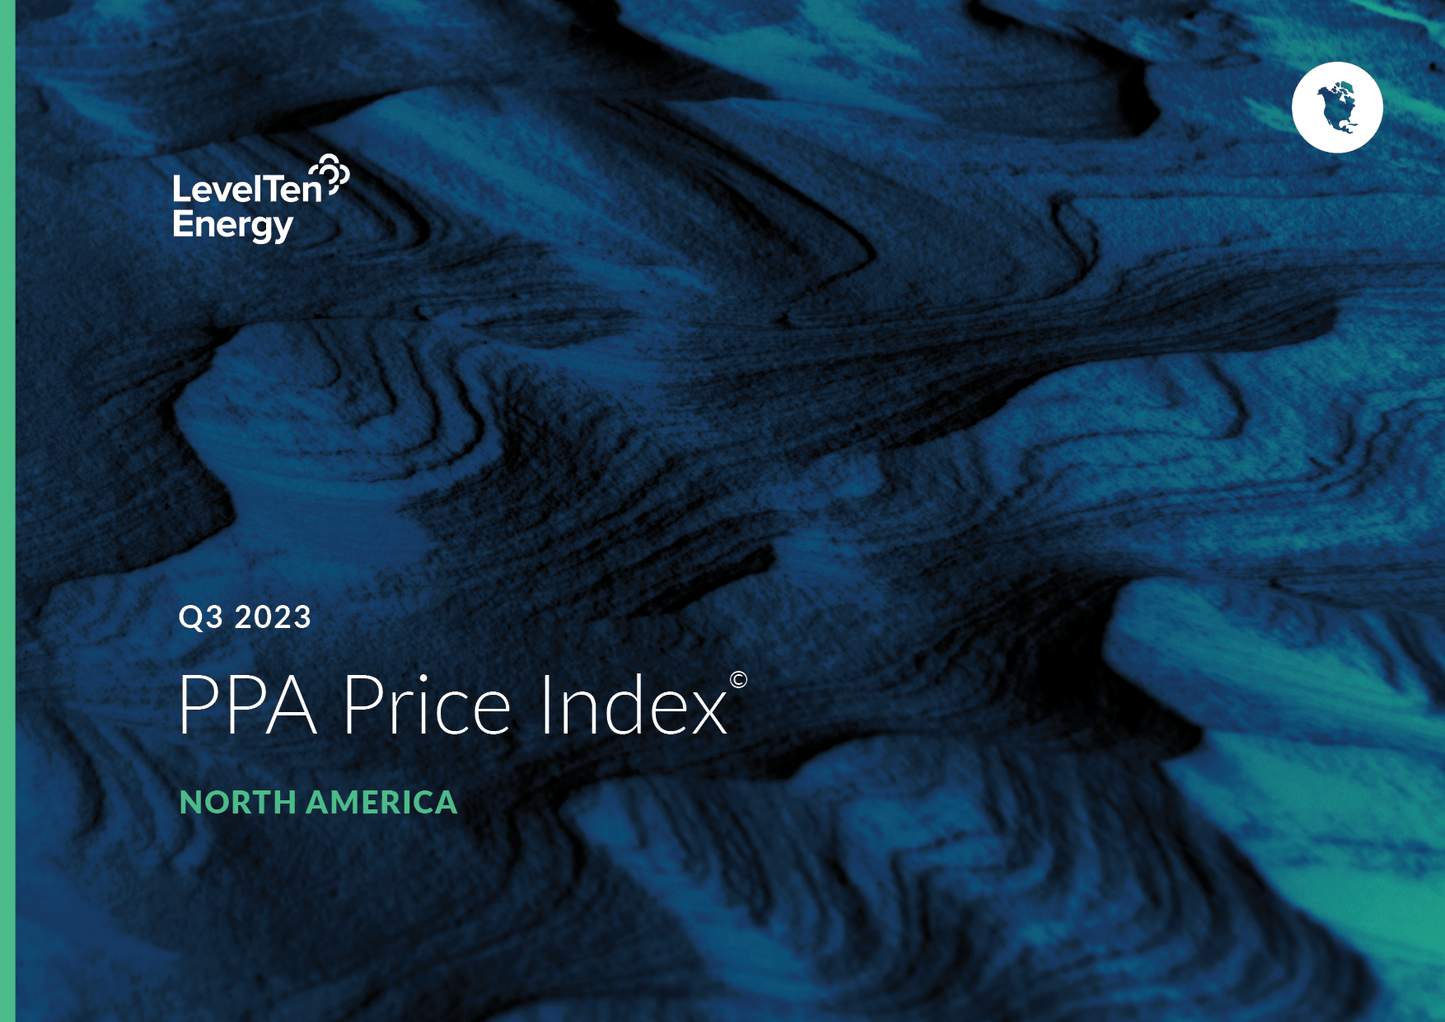 Q3 2023 PPA Price Index - North America